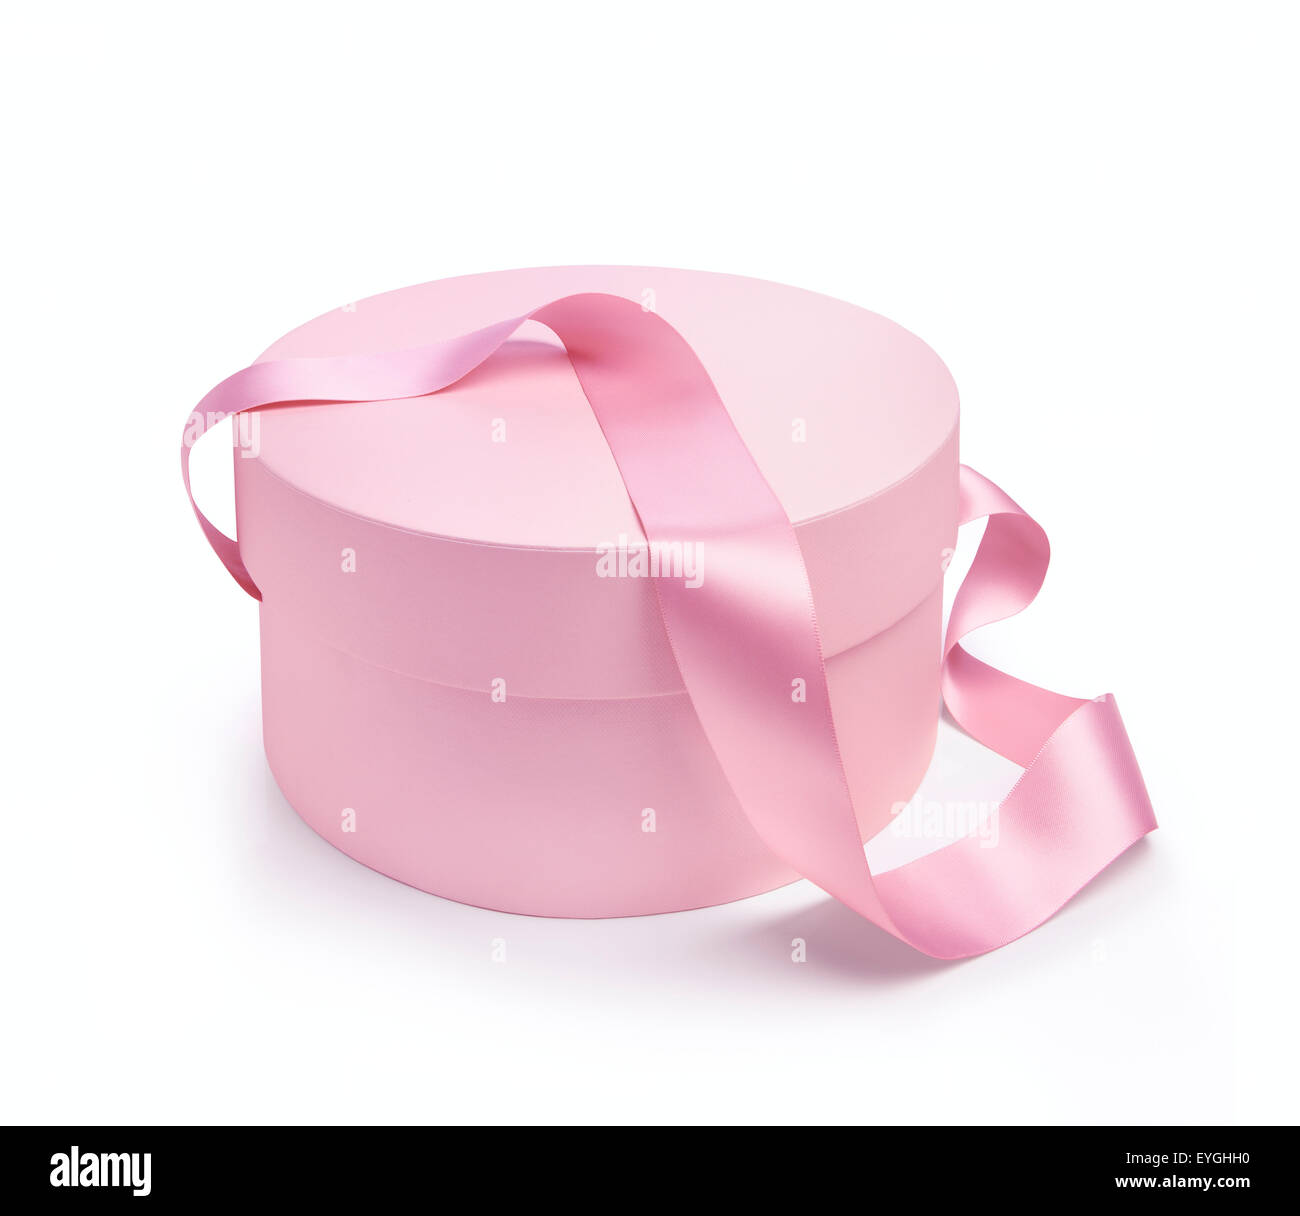 Boîte de forme ronde cadeaux en rose avec poignée bande. Isolé sur fond blanc Banque D'Images